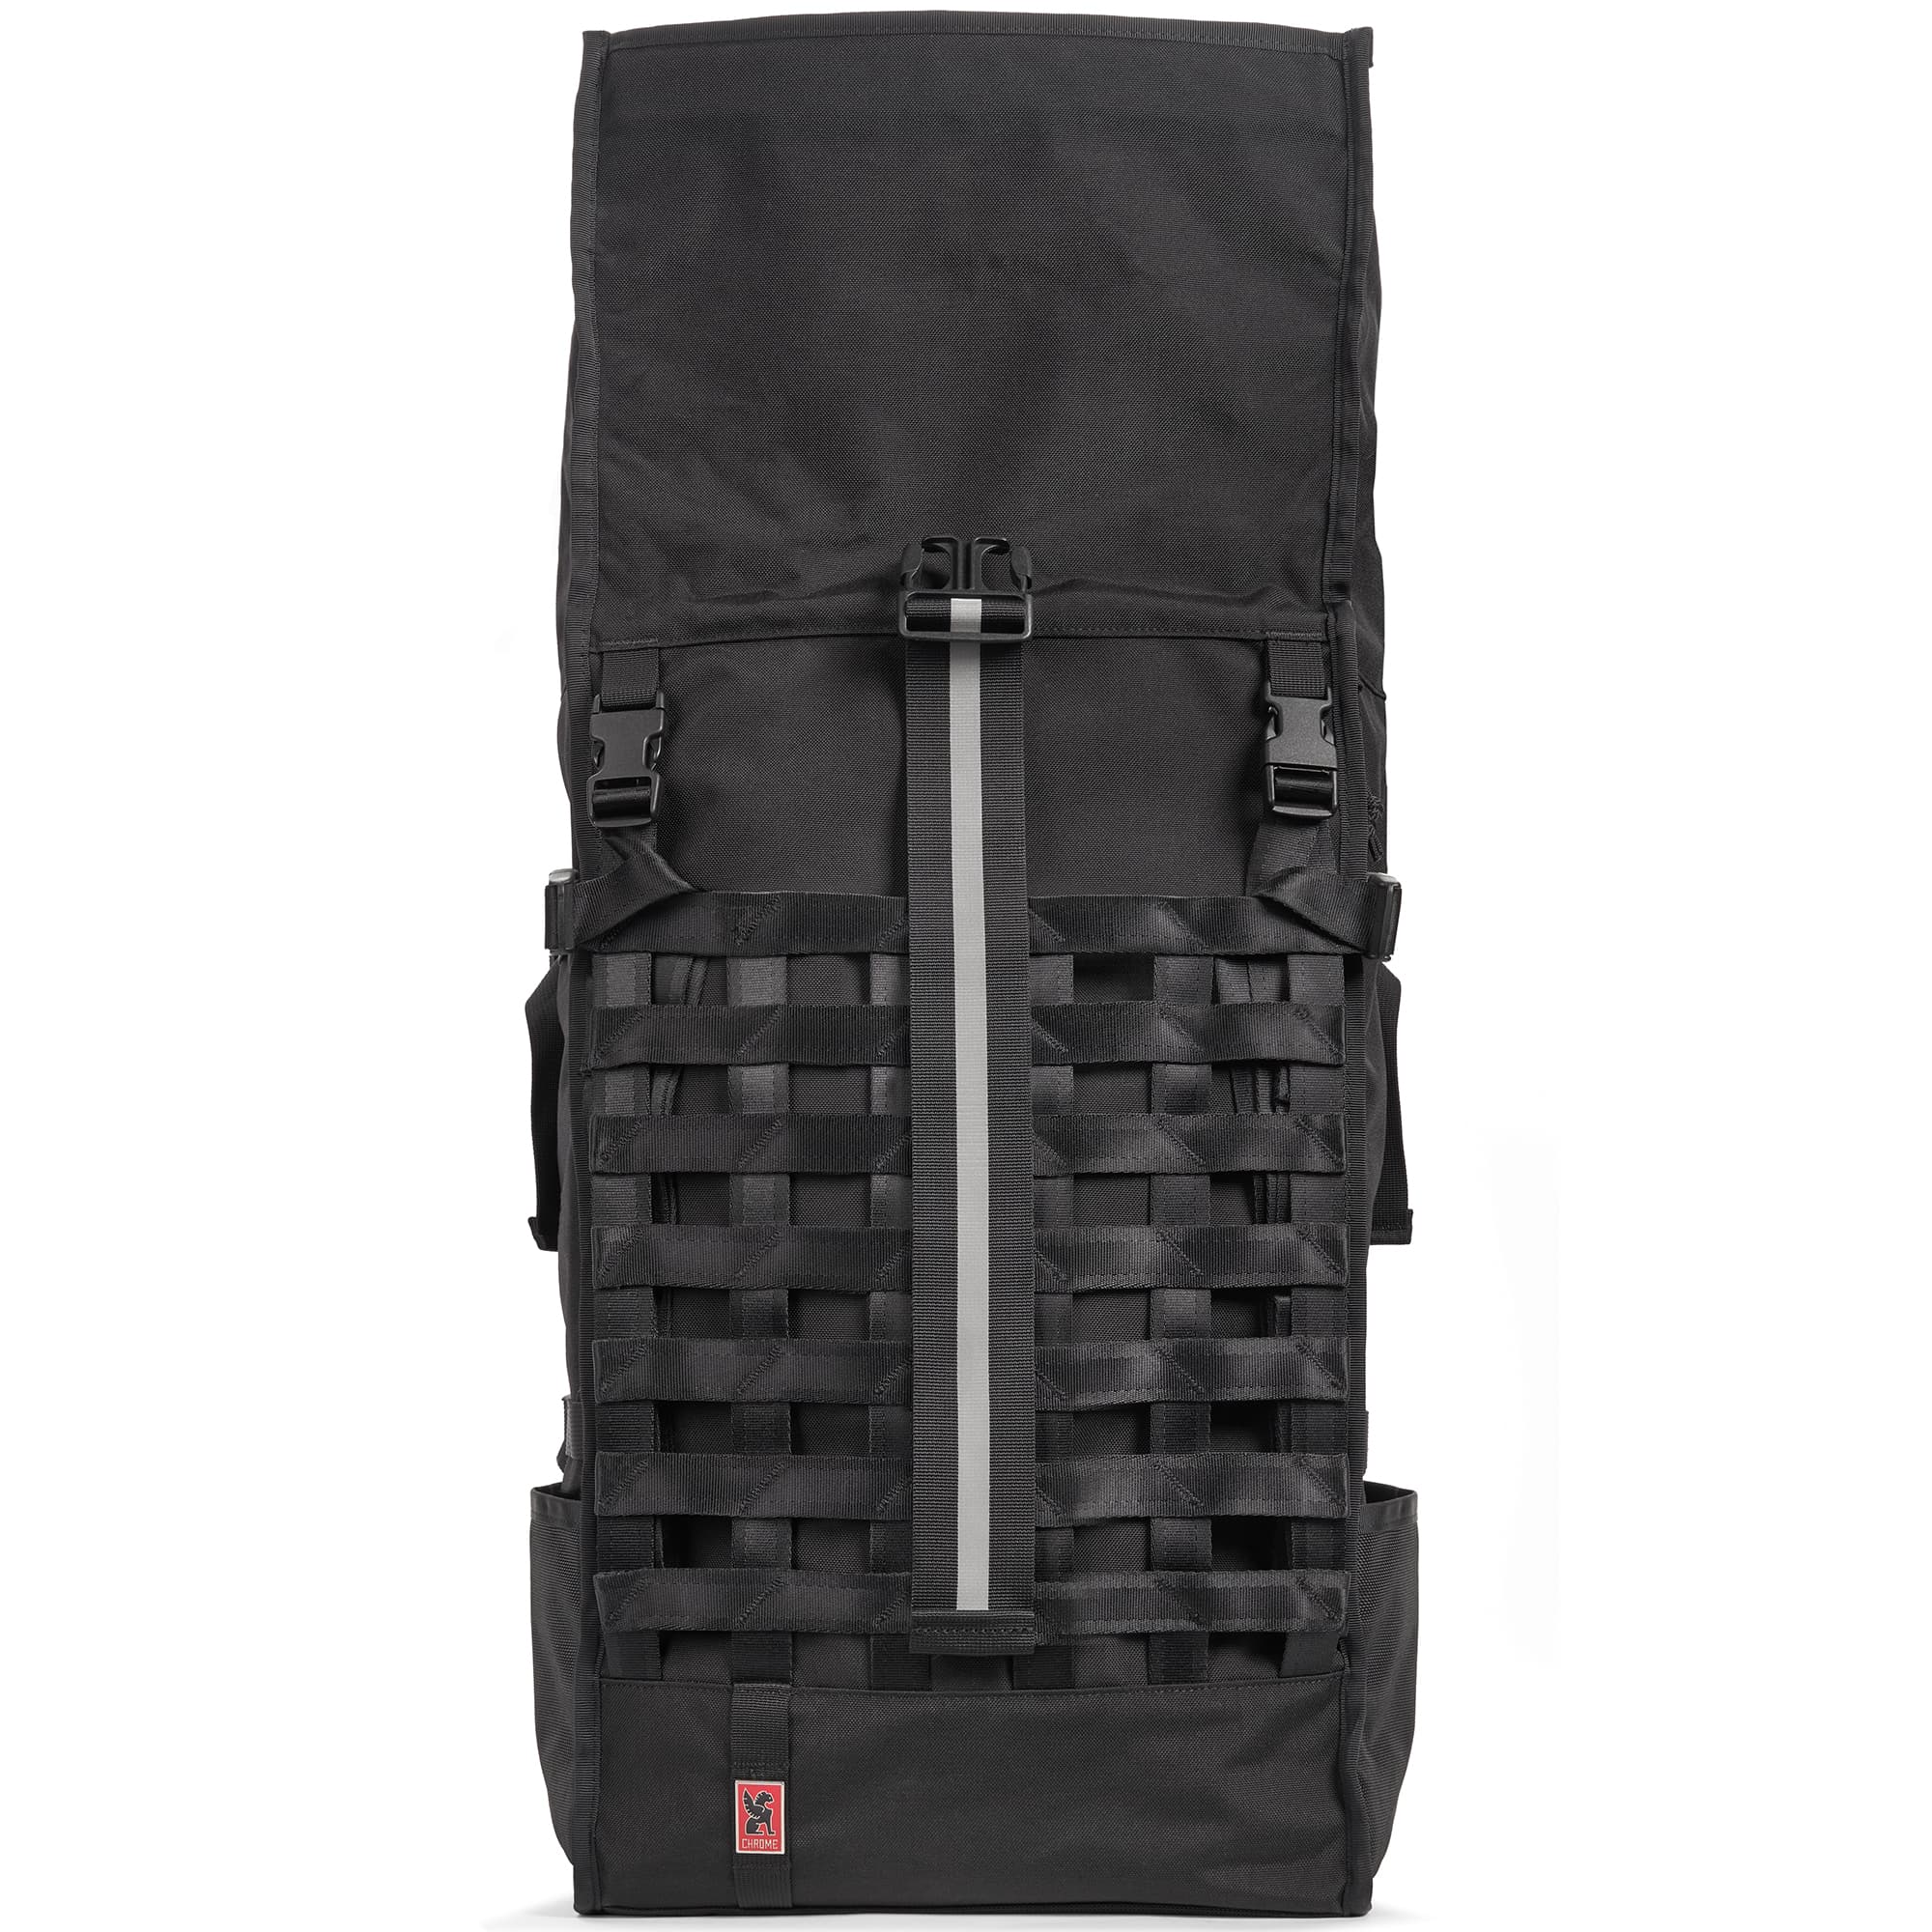 Barrage Pro Backpack unrolled #color_black/red